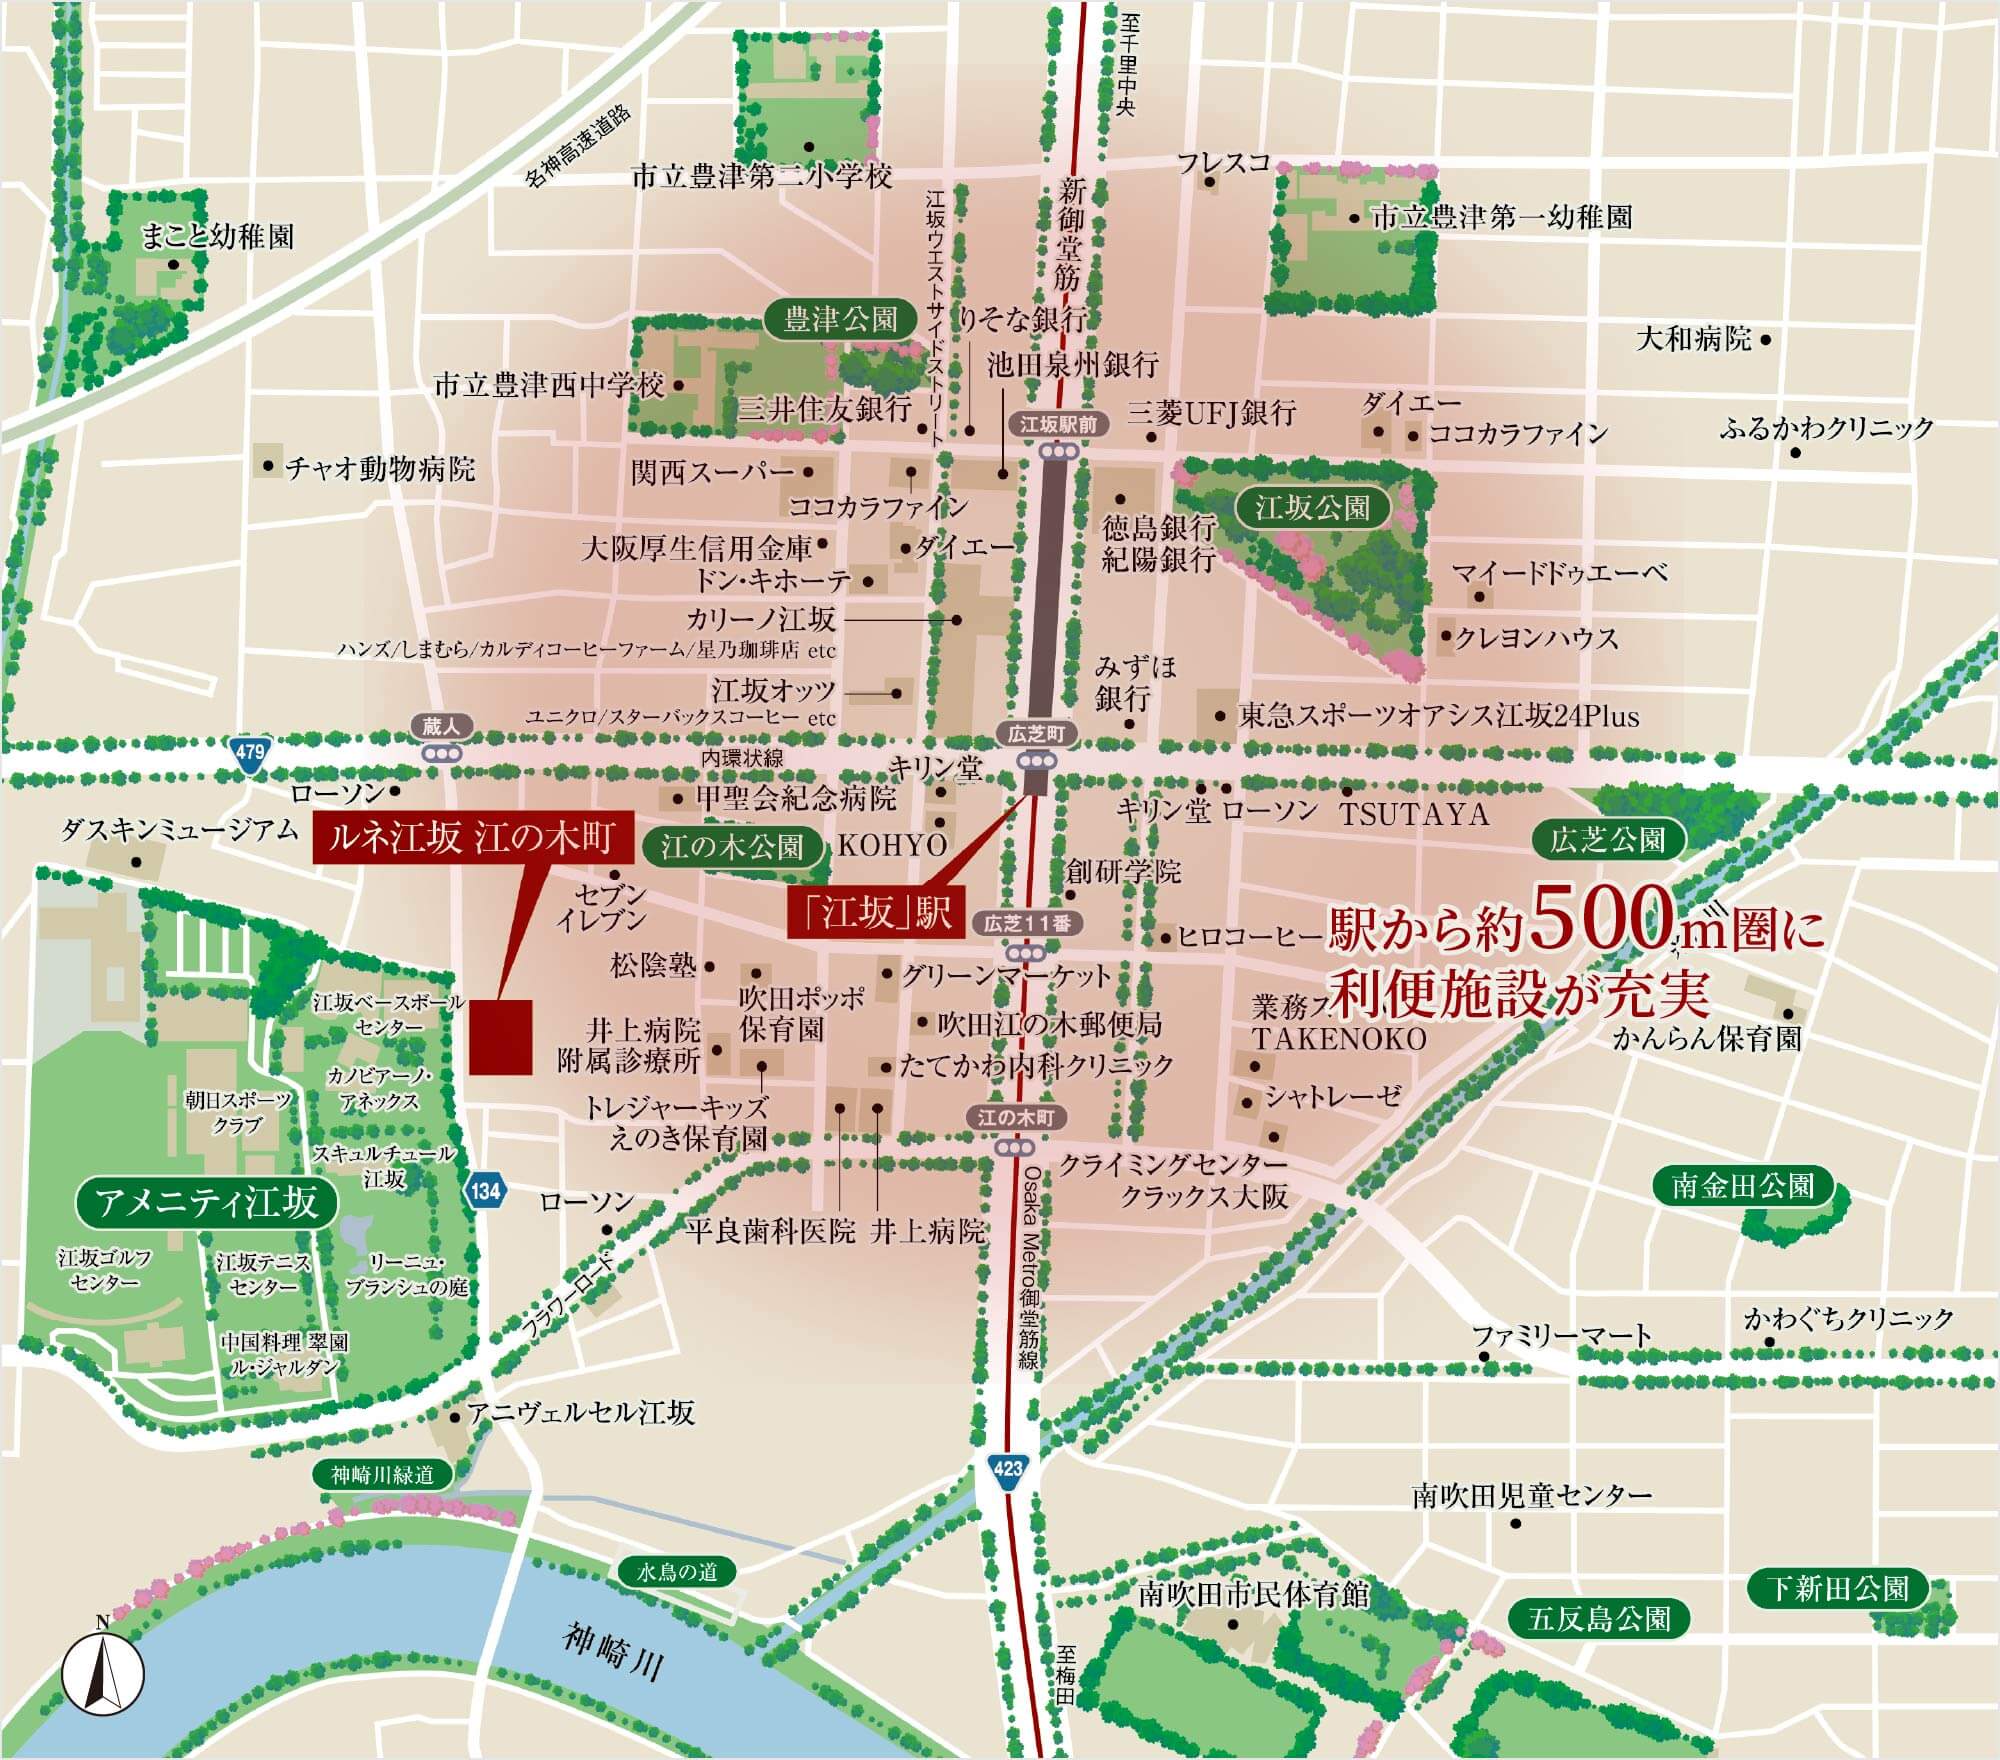 江坂駅周辺地図 駅から約500m圏に利便施設が充実